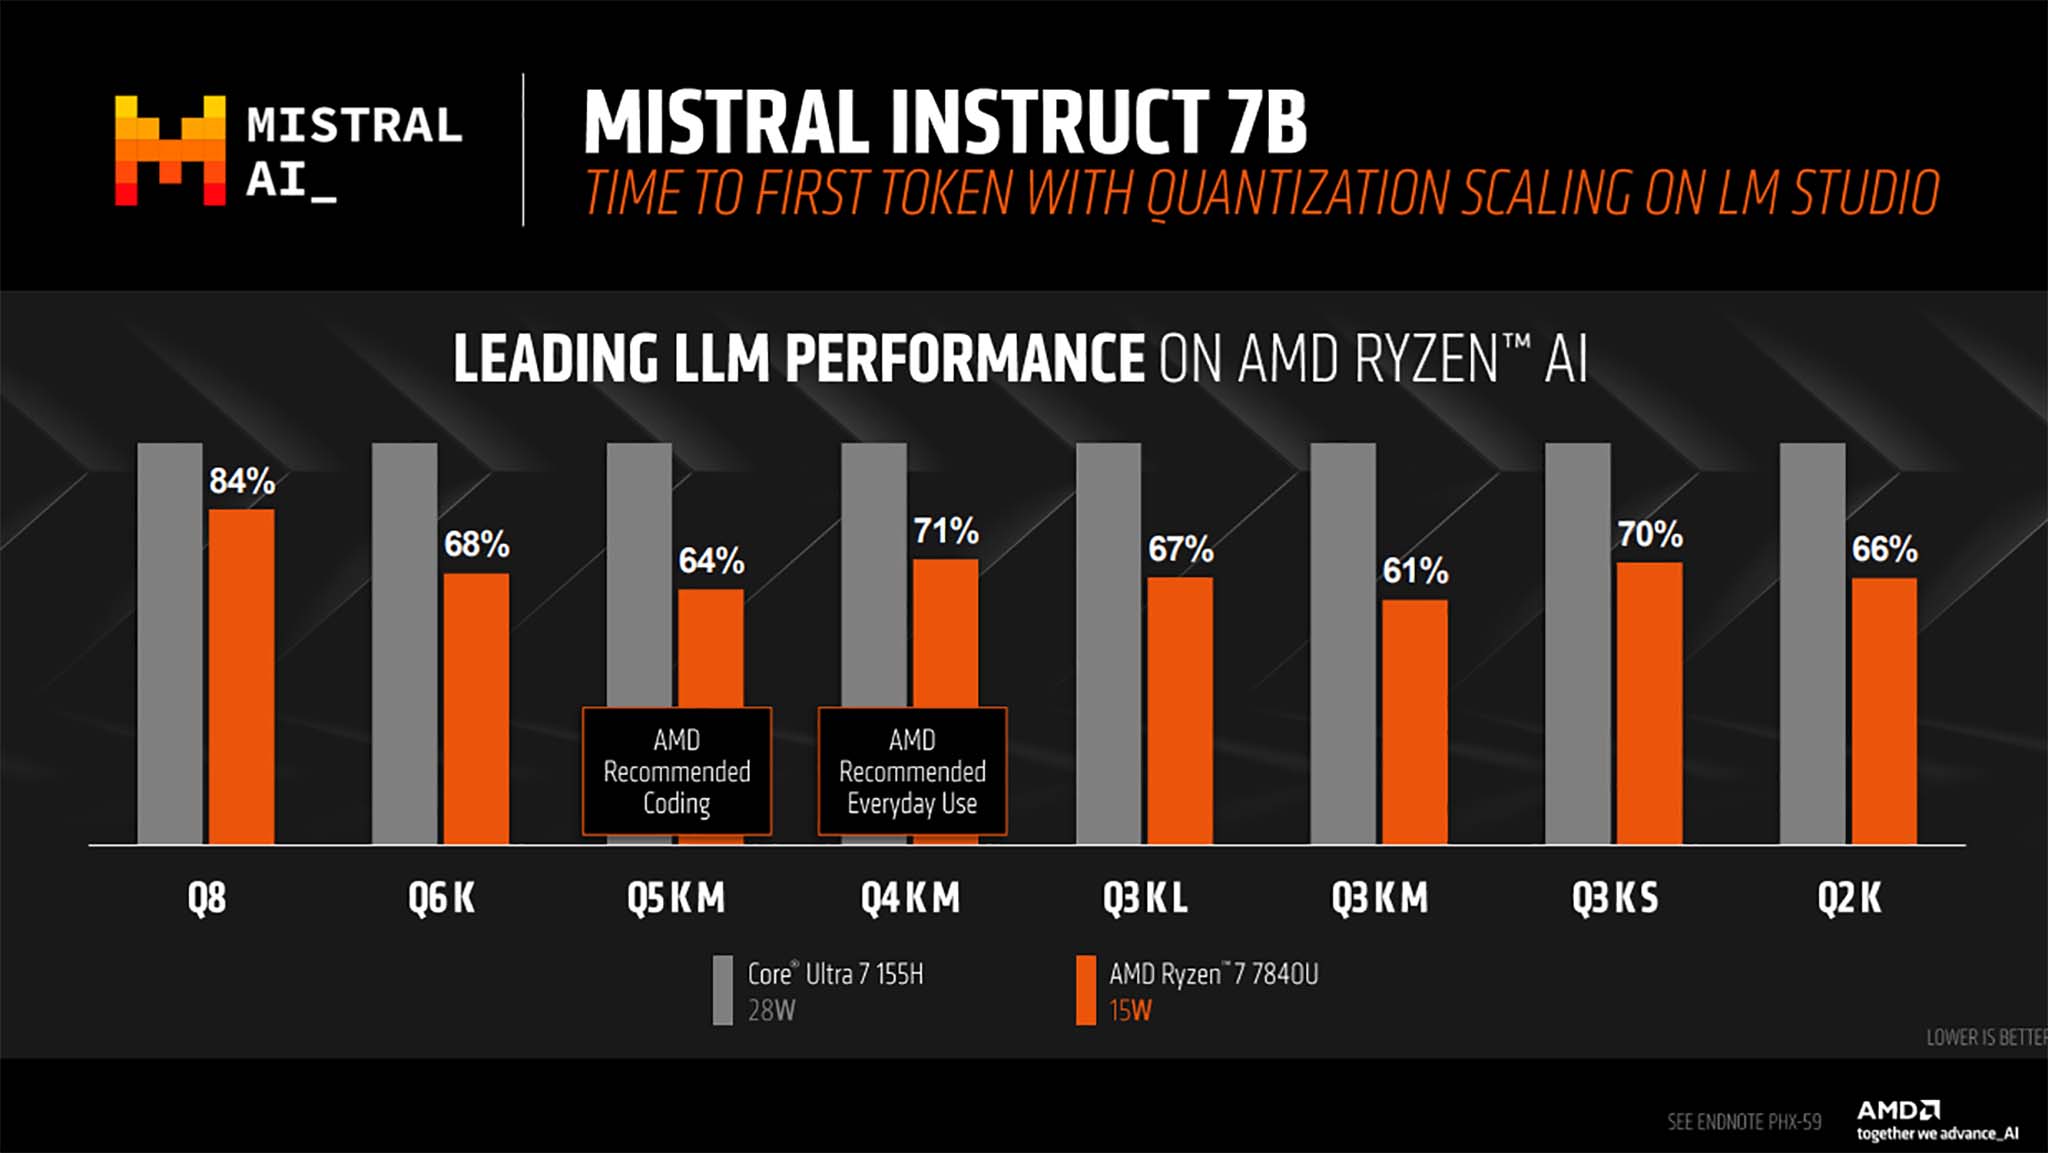 AMD Ryzen Mistral Talimatı 7B İlk belirteç zamanı: AMD Ryzen 7 vs Core Ultra 7